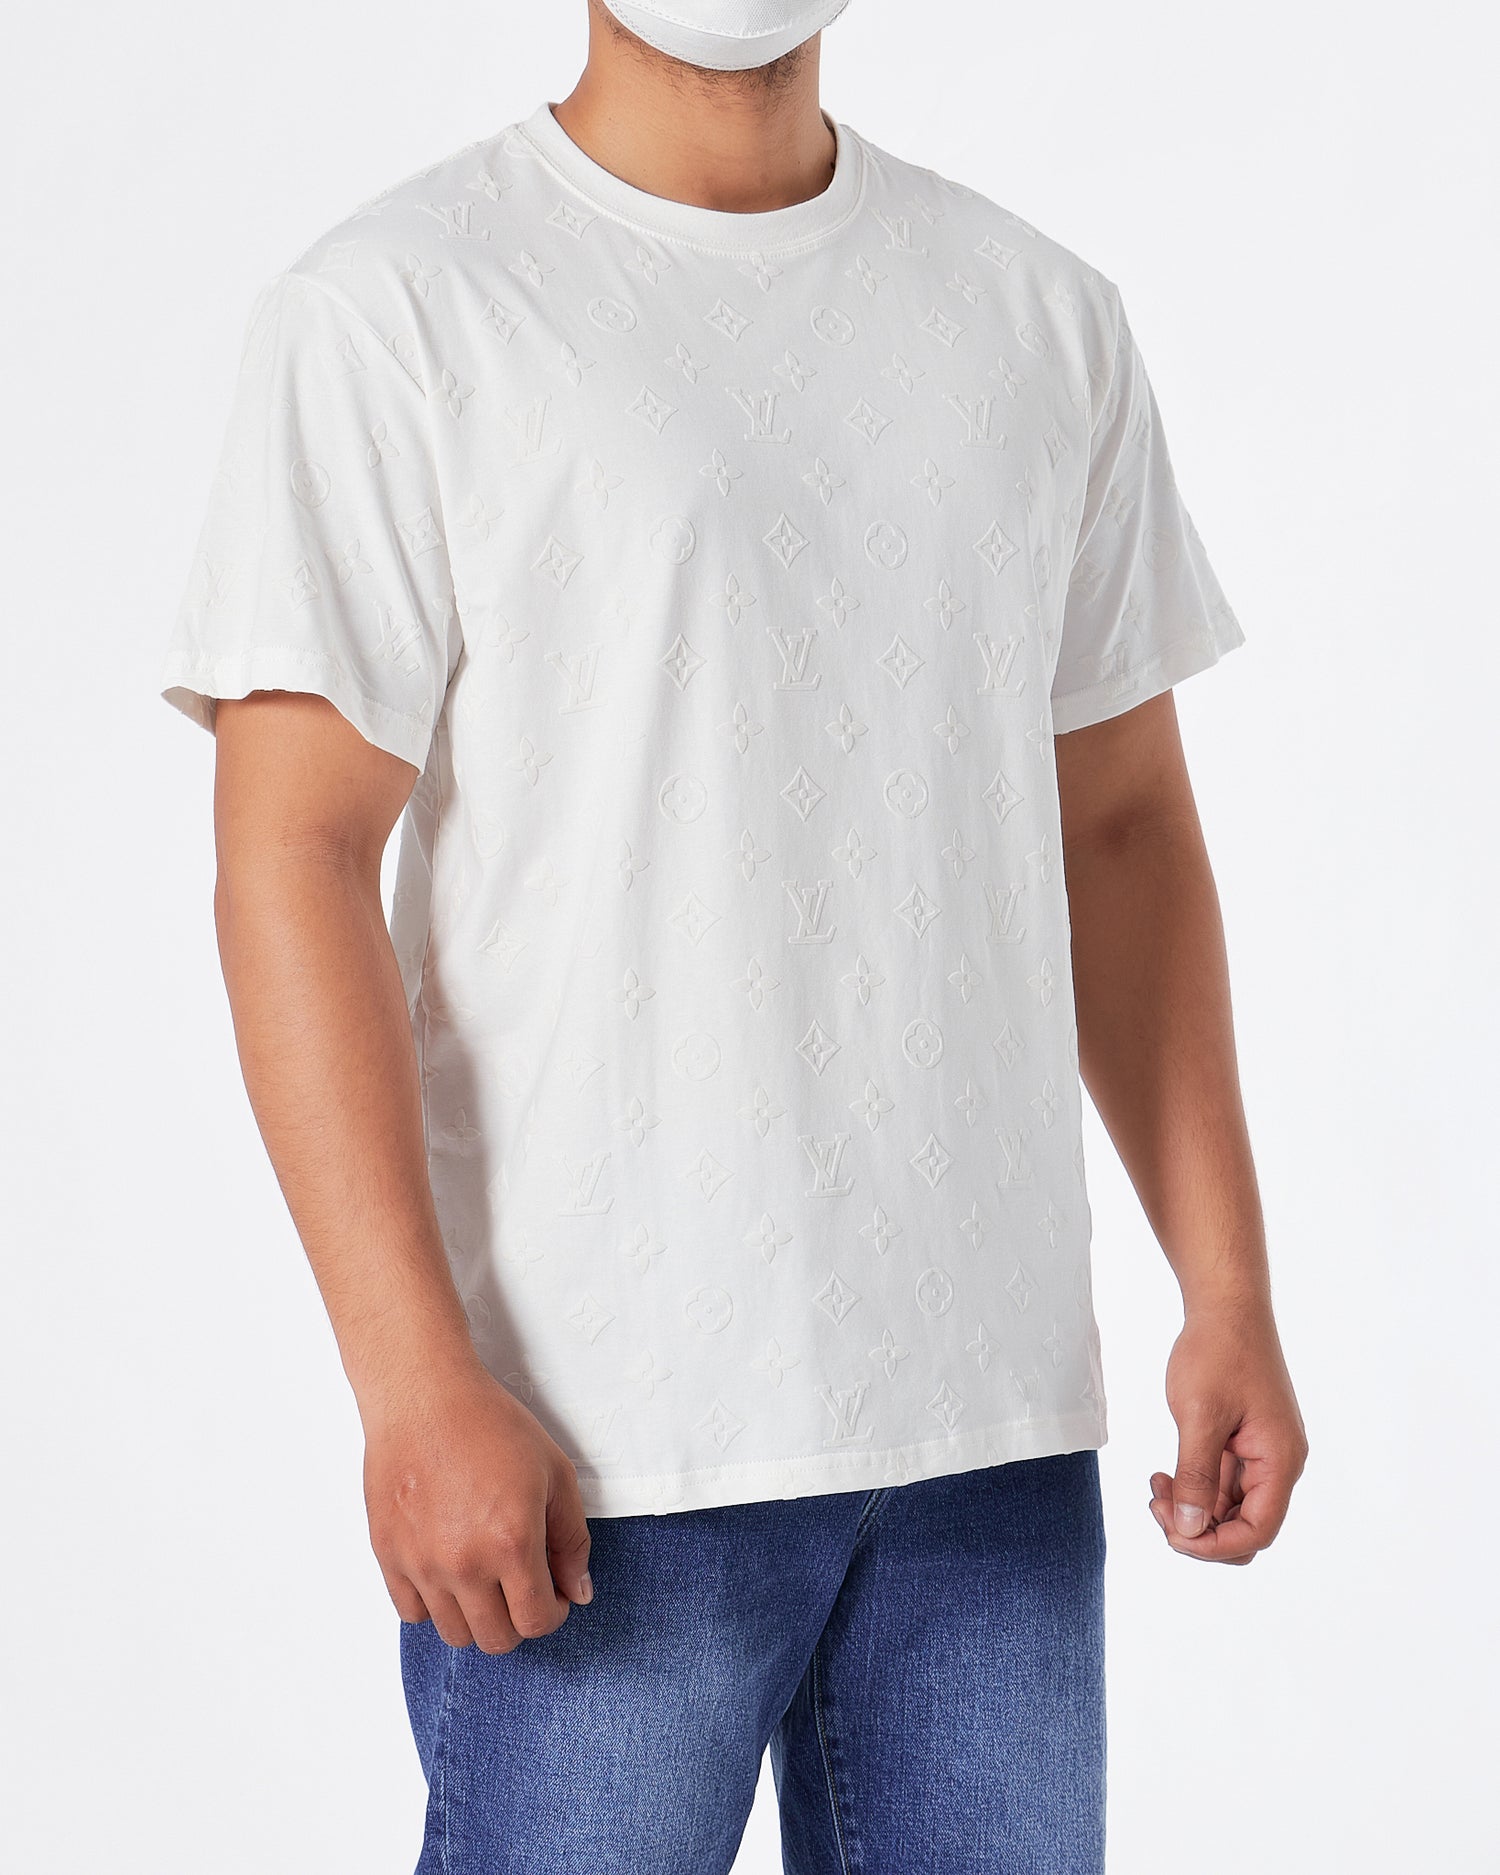 LV Monogram Embossed Over Printed Men White T-Shirt 22.90